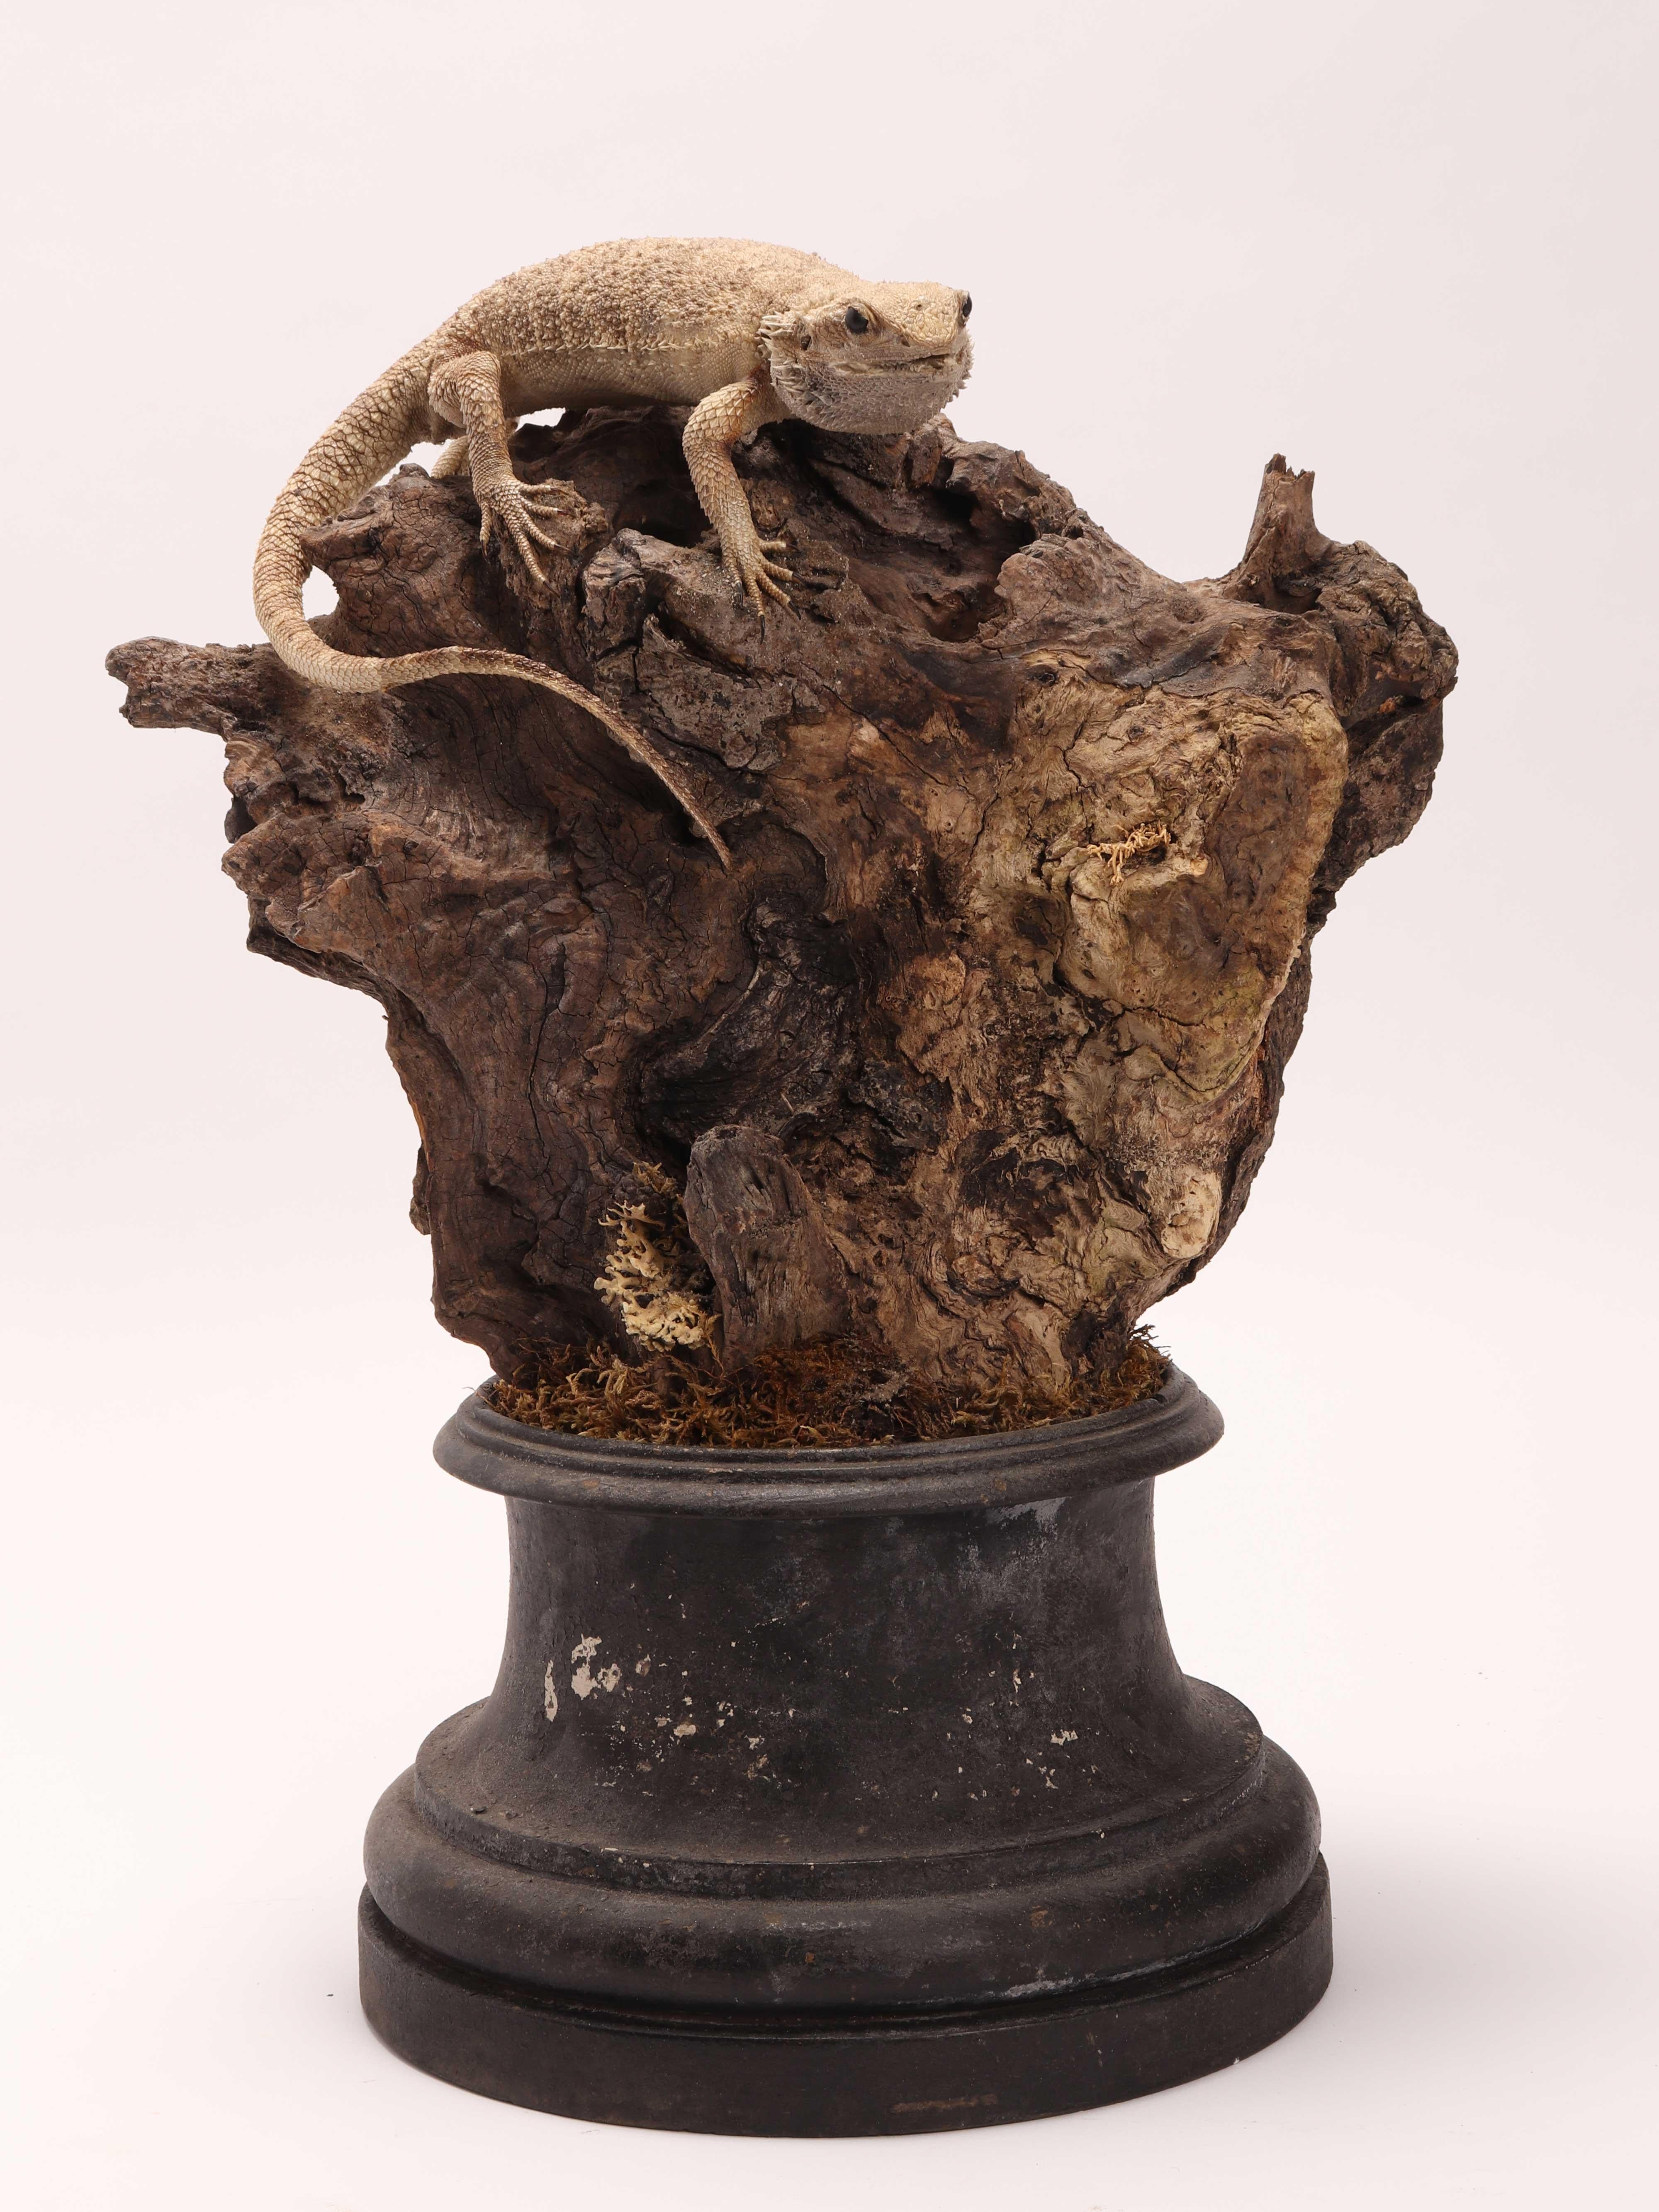 Natürliches Exemplar aus der Wunderkammer. Ein Paar ausgestopfte Pogona Vitticeps Reptilien, montiert auf einem Holzsockel aus Olivenholz und Zirbelkiefer. Schwefelglasaugen. Proben für Labor und Naturalienkabinett. Italien 1850 ca.

 